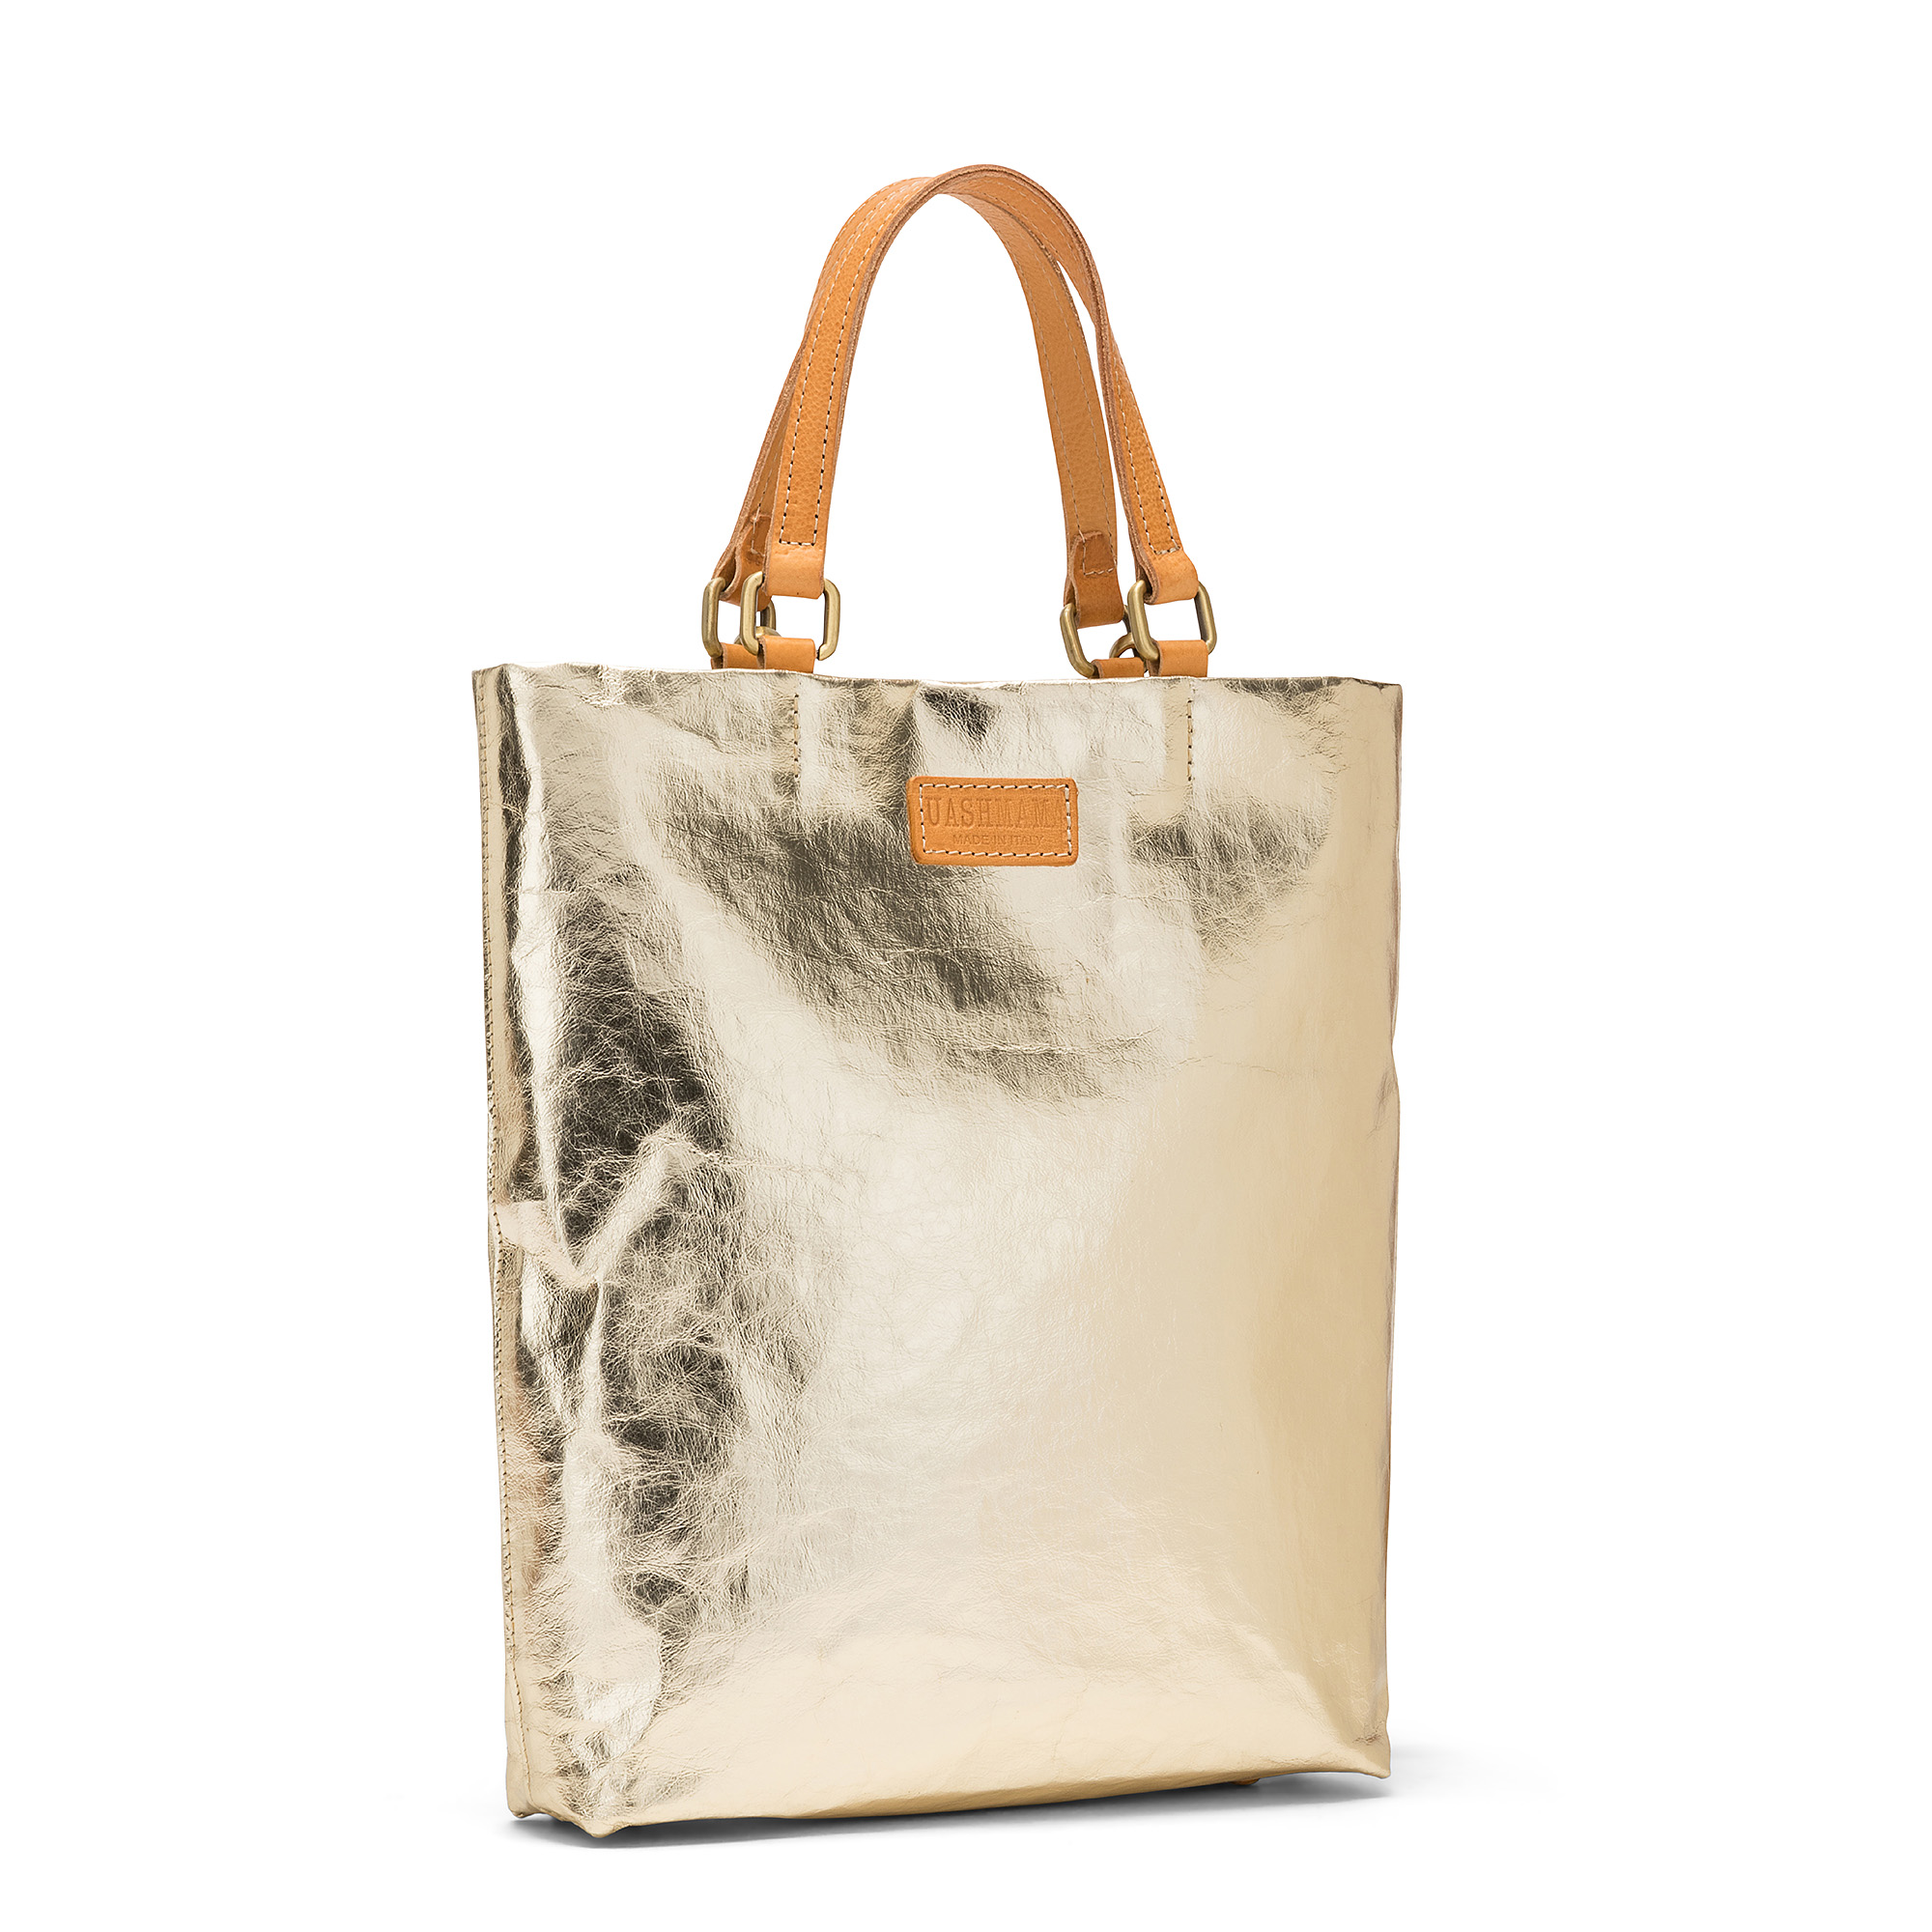 Jil Sander Market leather tote bag, 127-0Shops